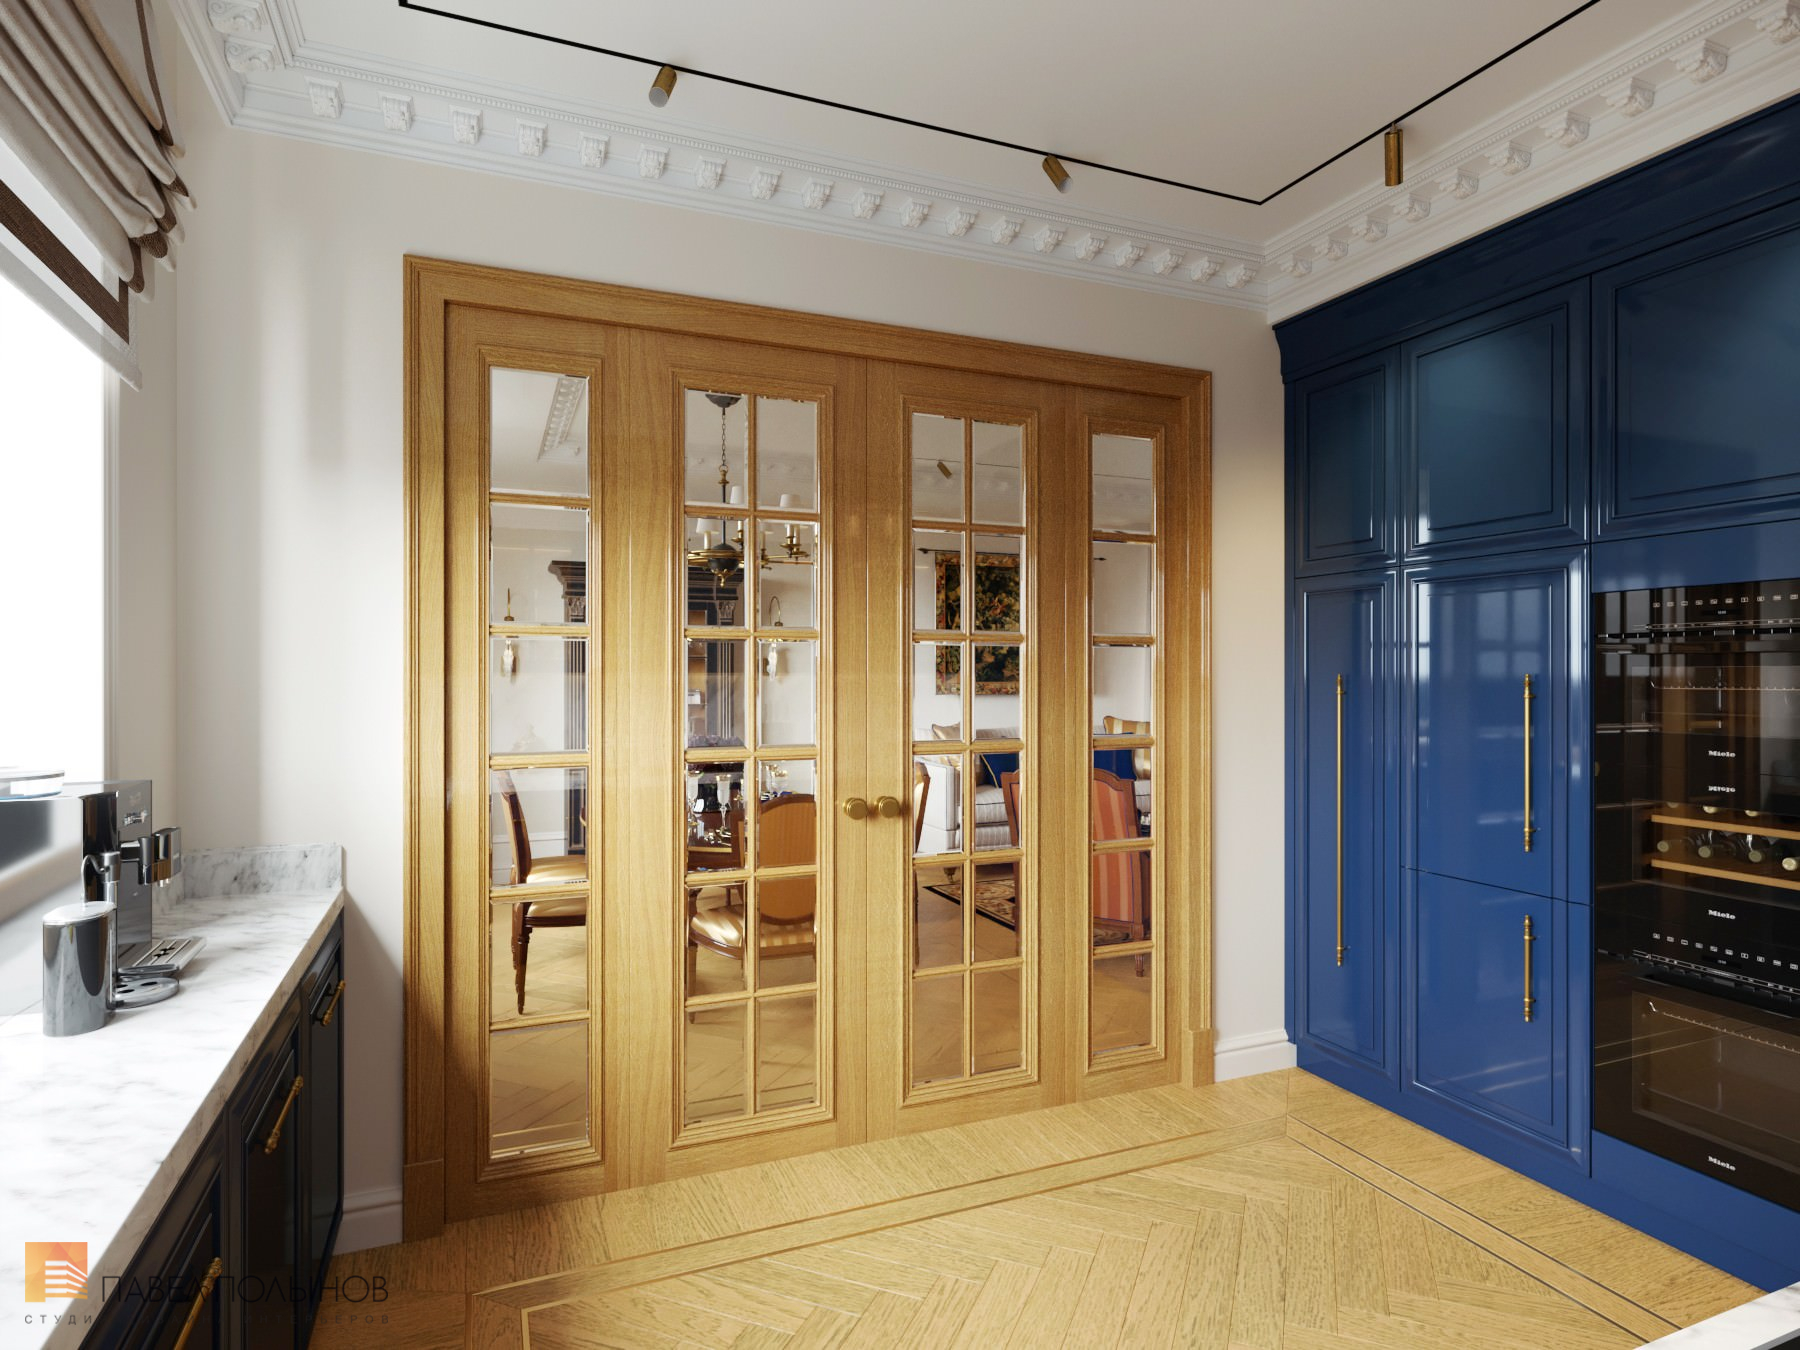 Фото интерьер кухни из проекта «Интерьер квартиры в стиле английской классики, ЖК «Патриот», 124 кв.м.»